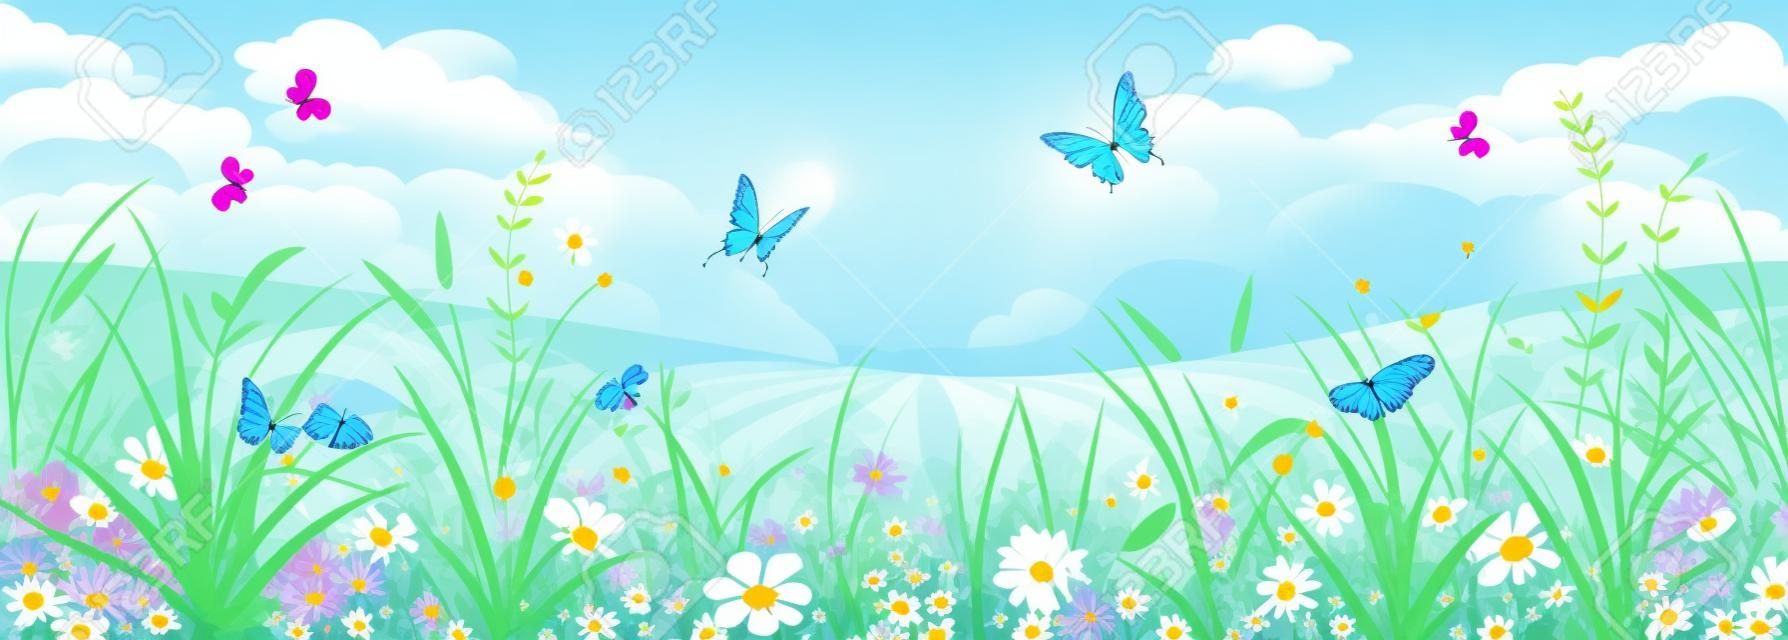 Floral Sommer oder Frühling Landschaft, Wiese mit Blumen, blauer Himmel und Schmetterlinge